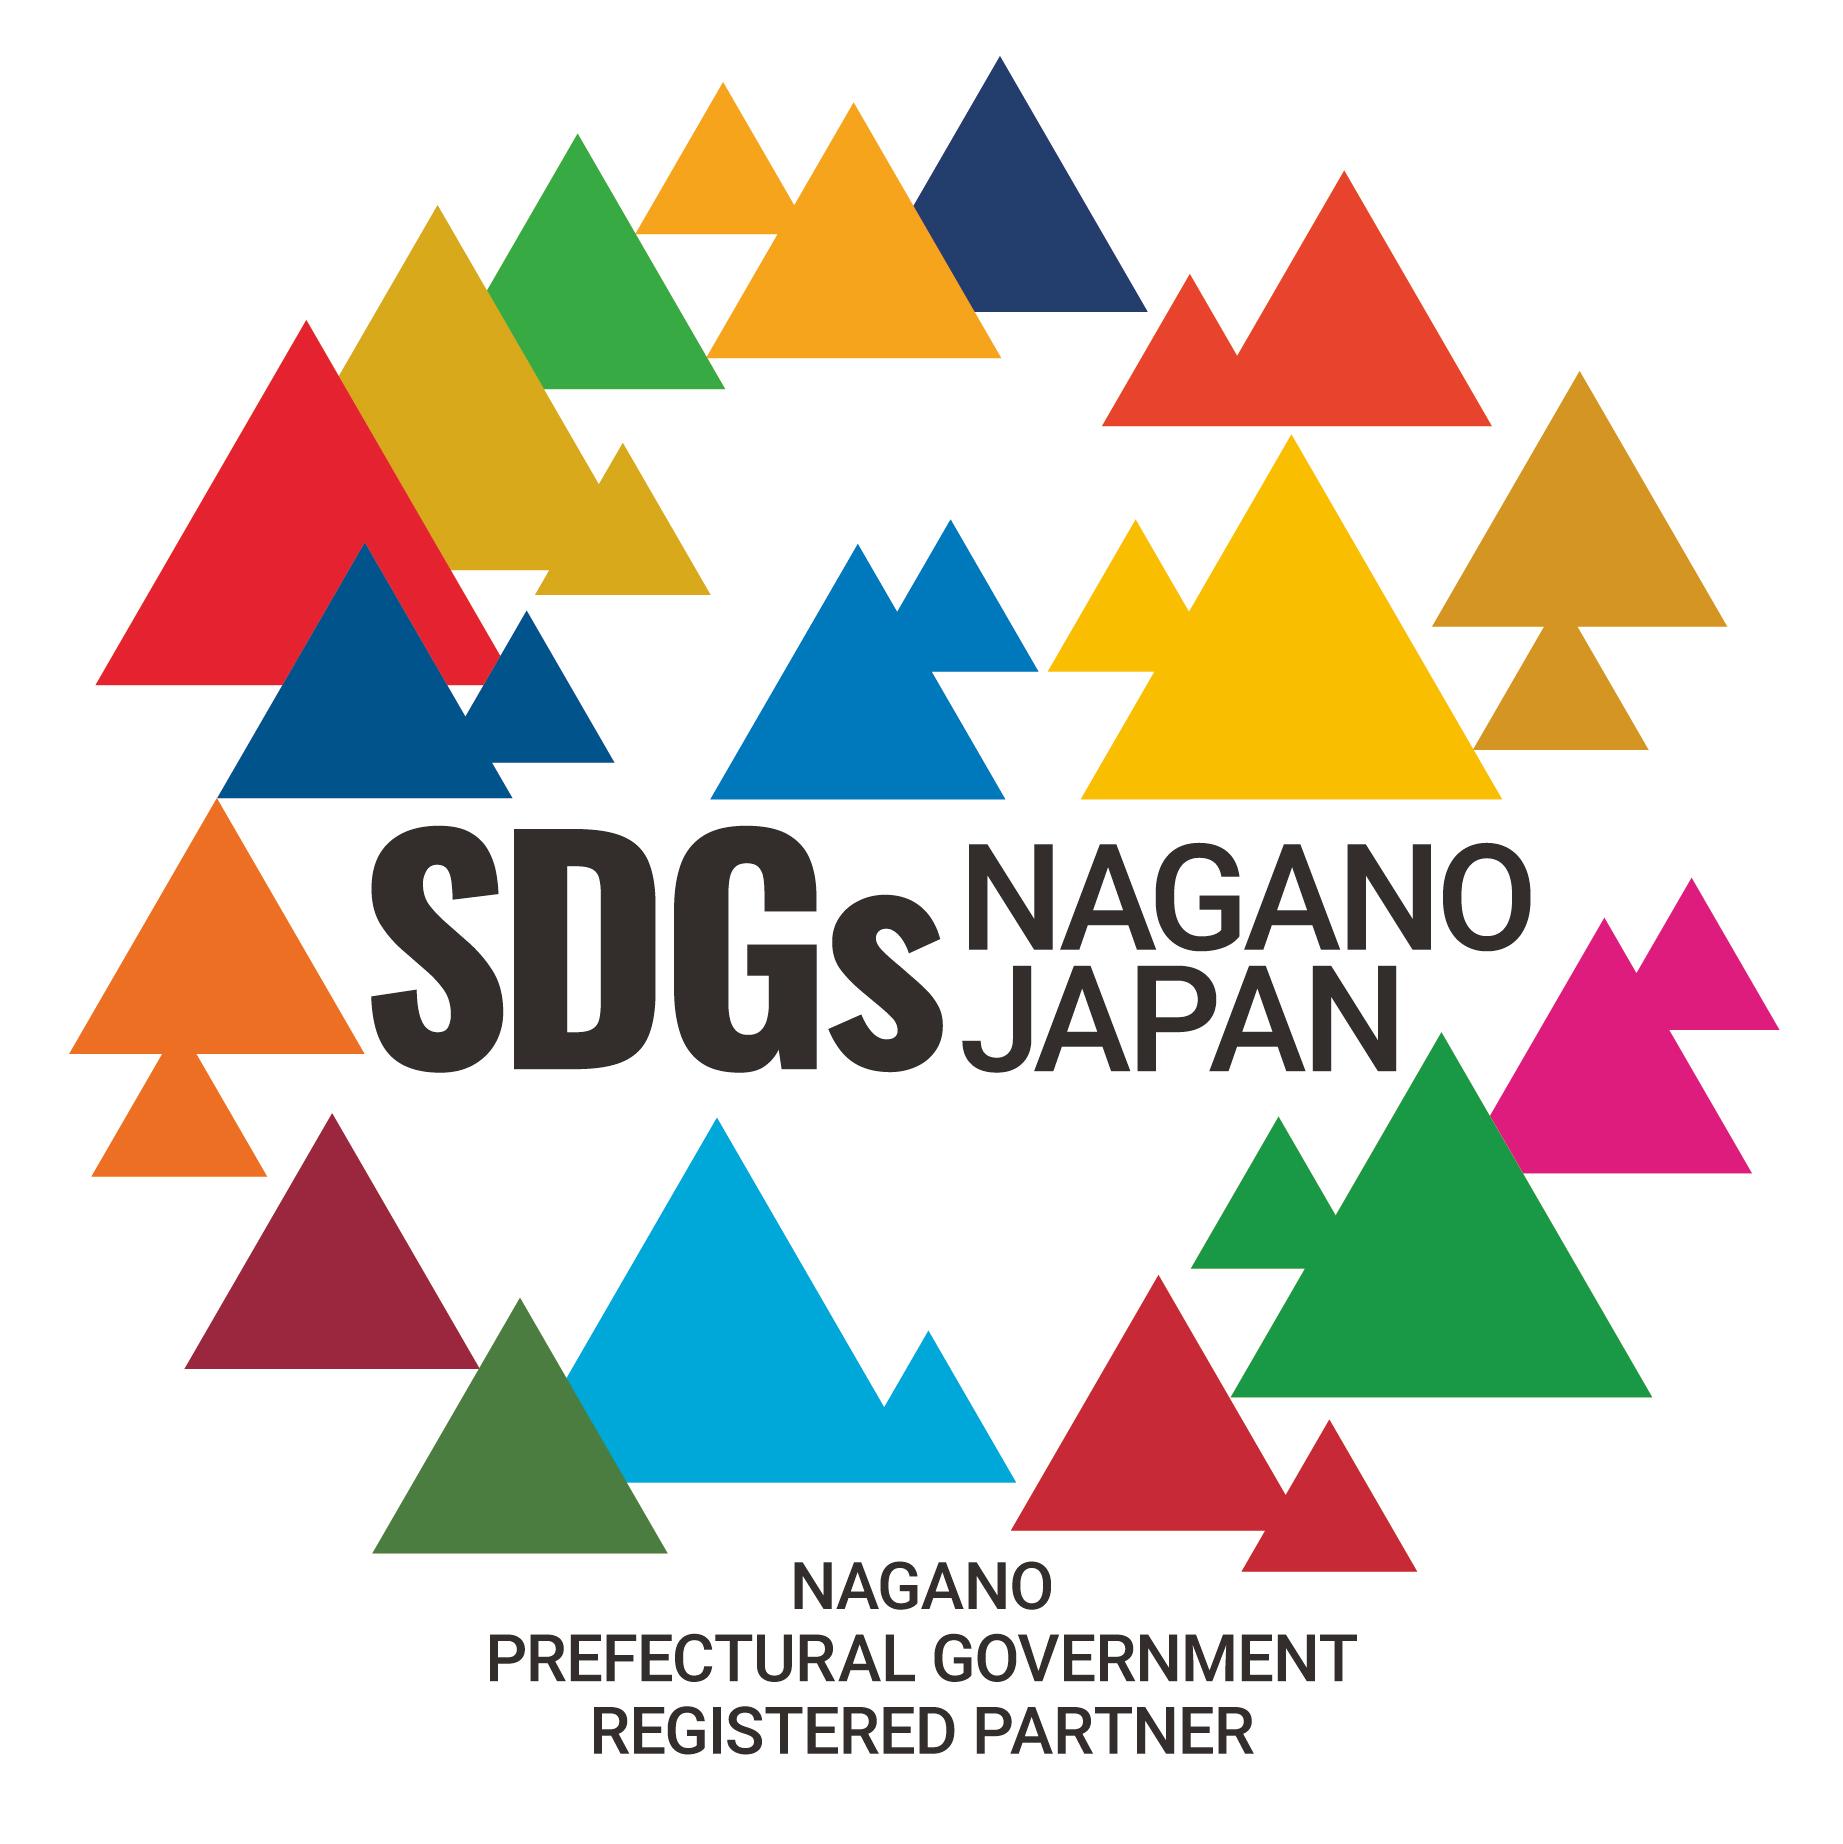 長野県SDGs推進企業